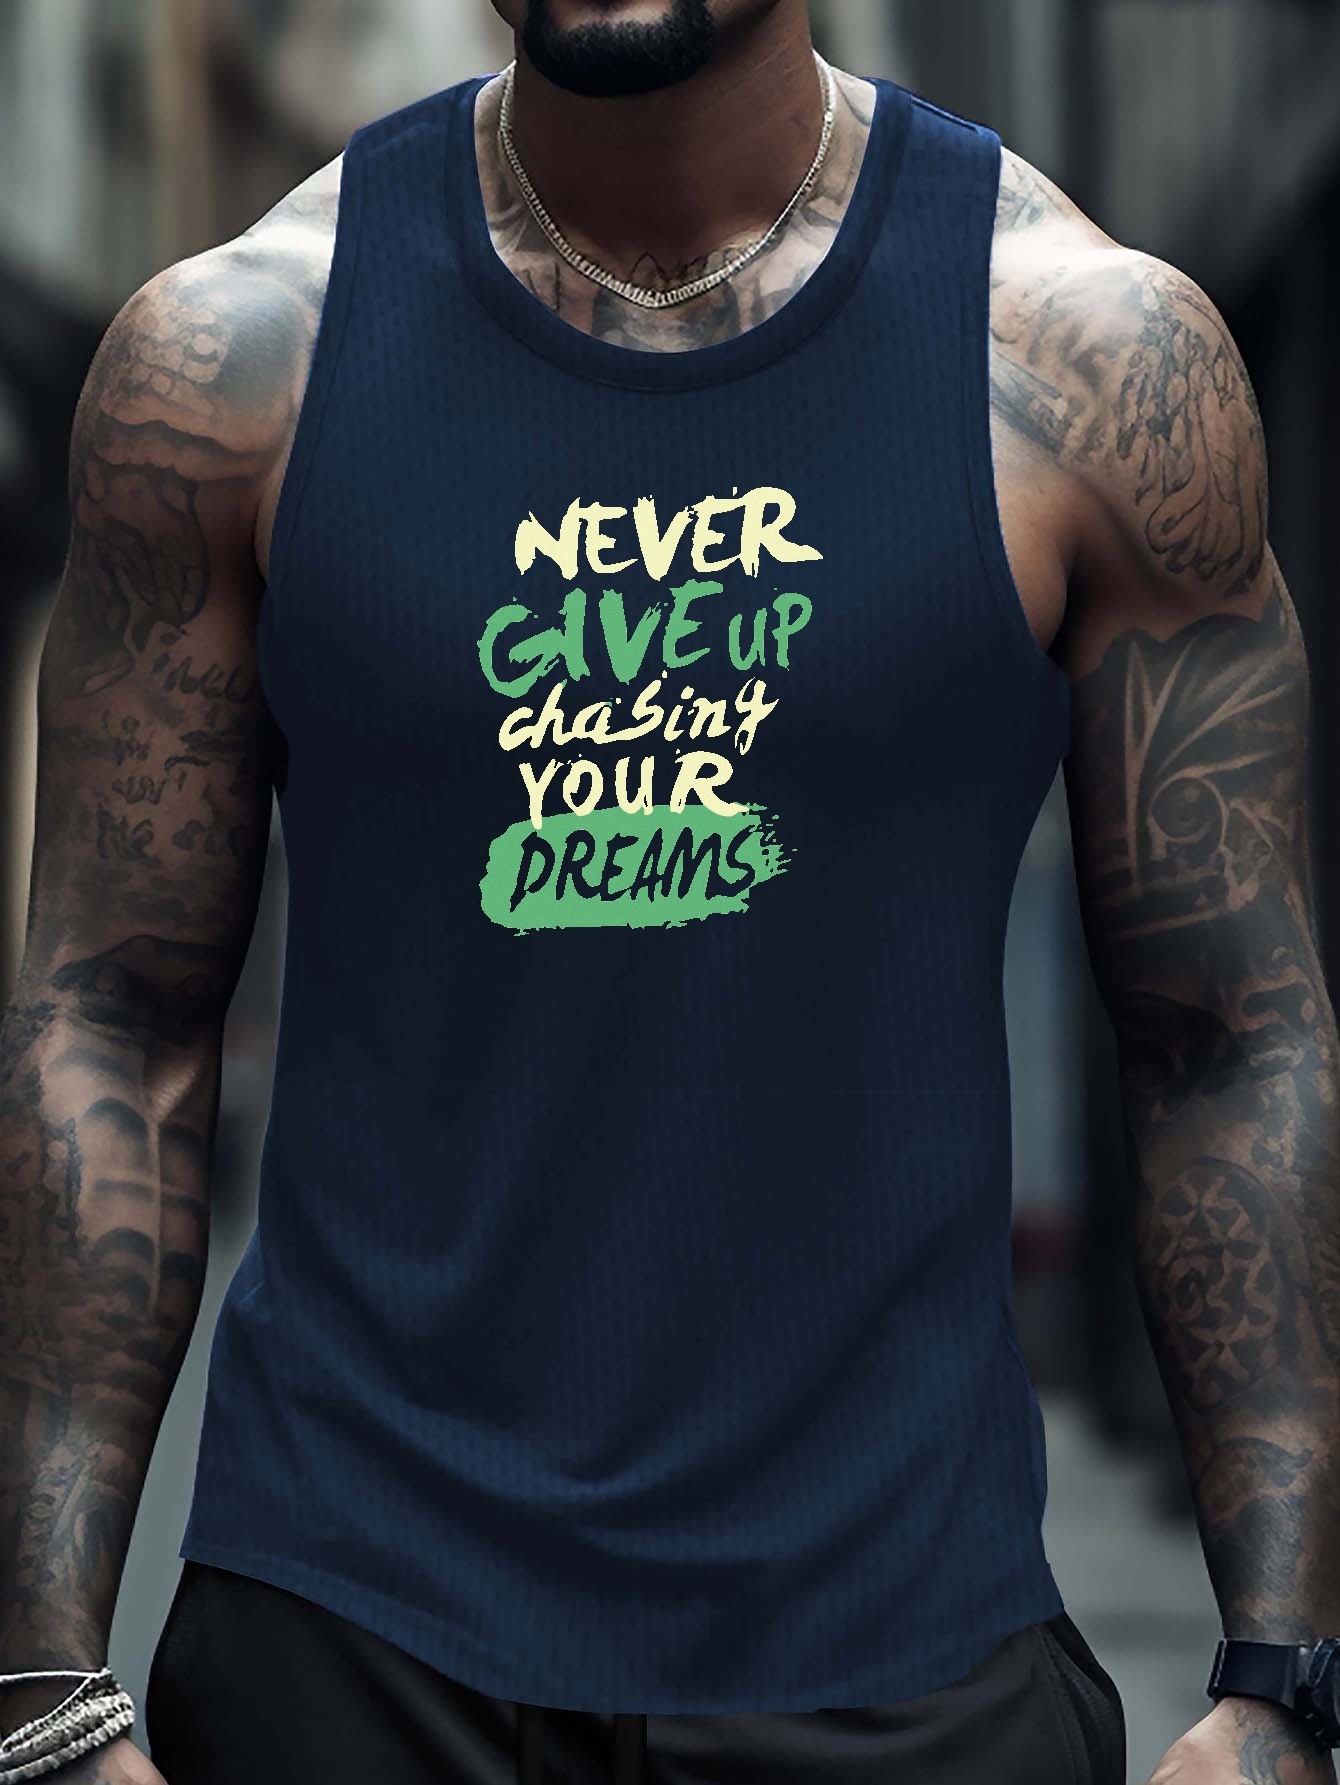 Never give up on your dreams - nunca desista dos seus sonhos